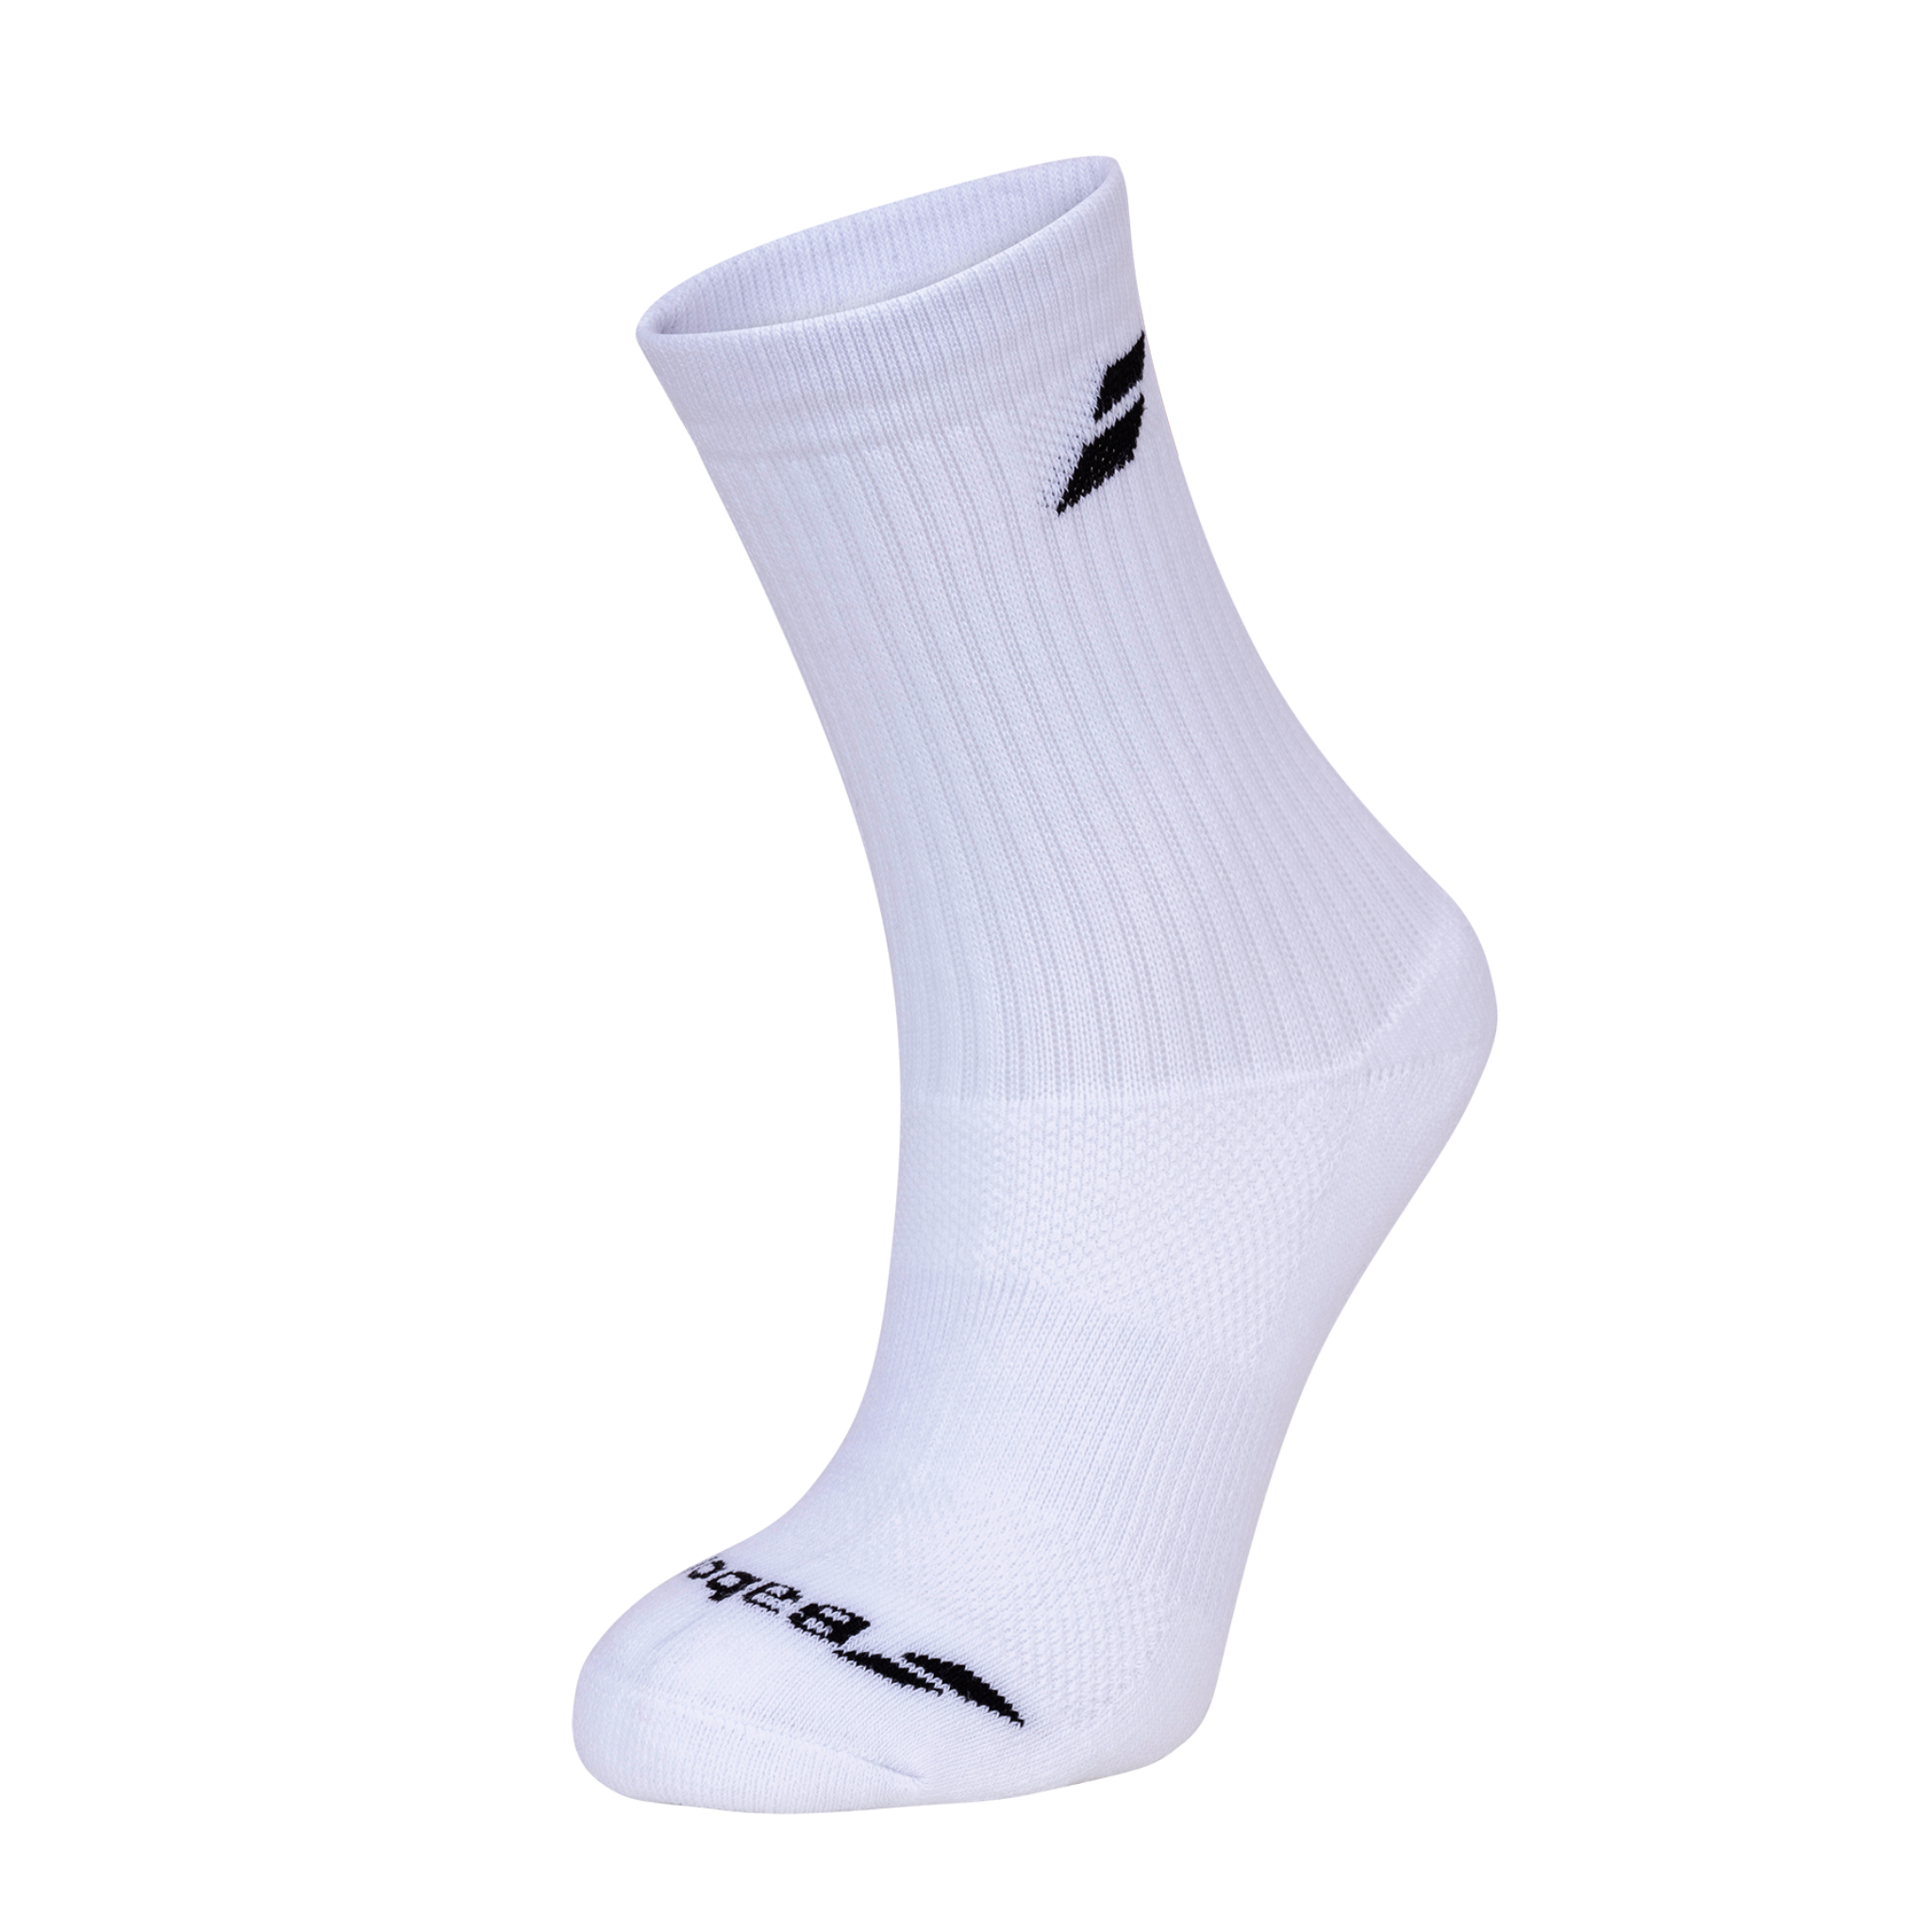 Babolat Men's Socks > White > 3 pack